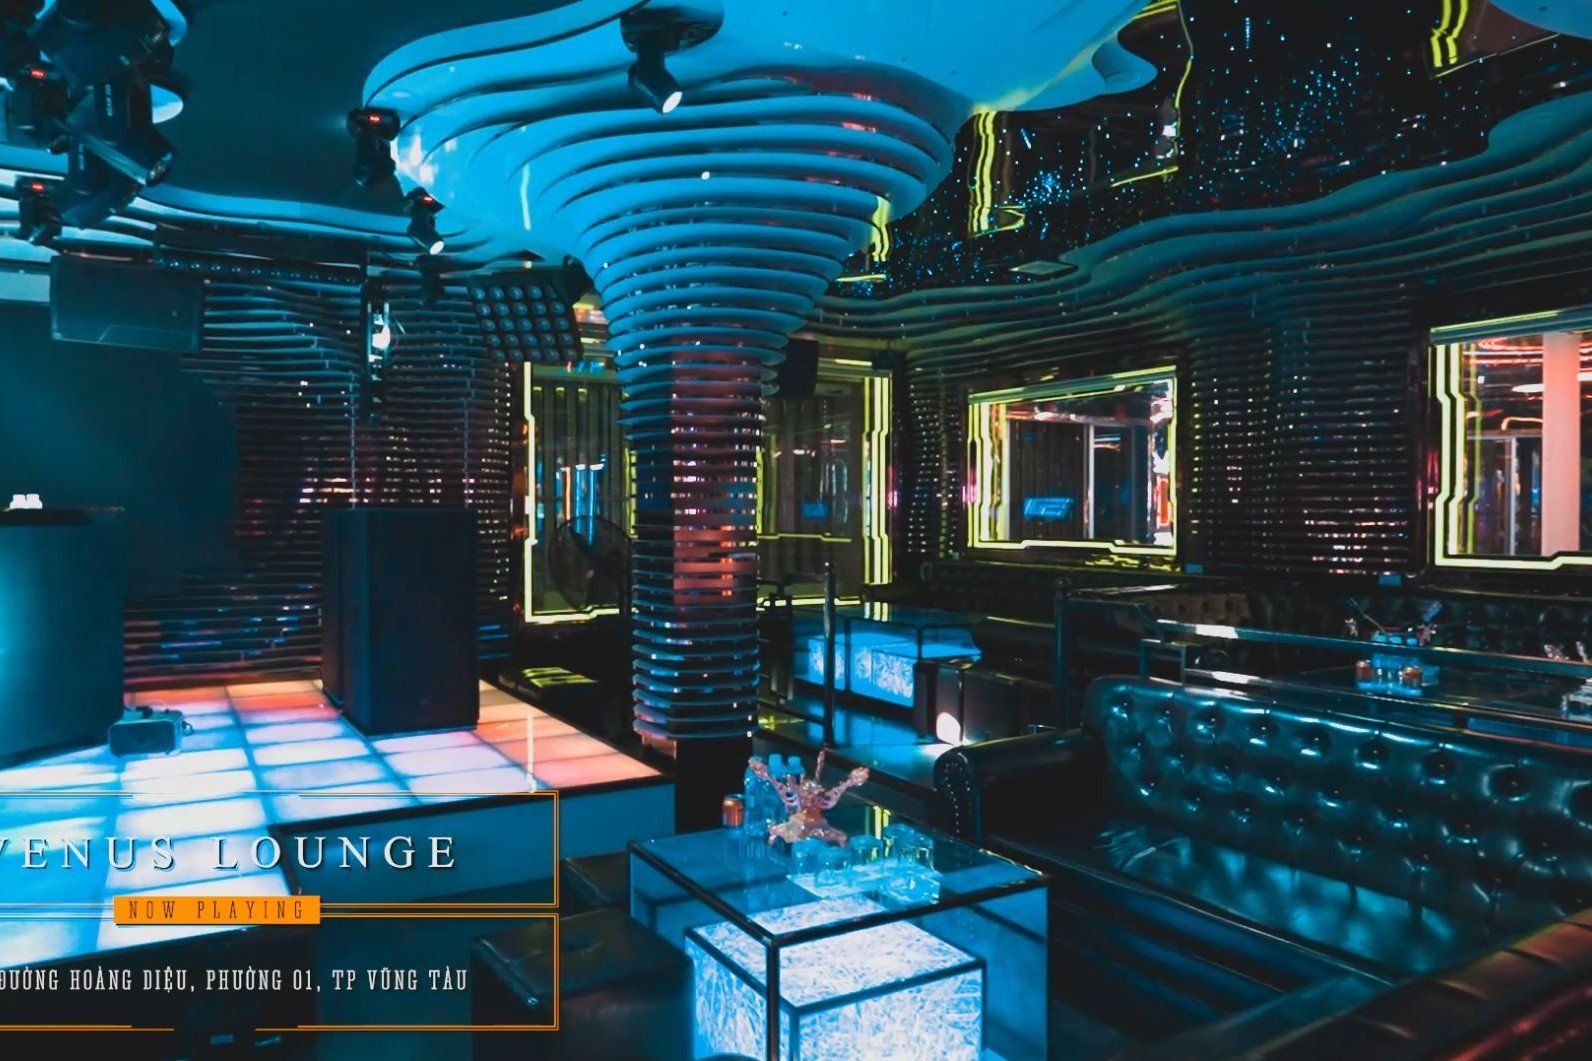 Venus Lounge - 3 Hoàng Diệu